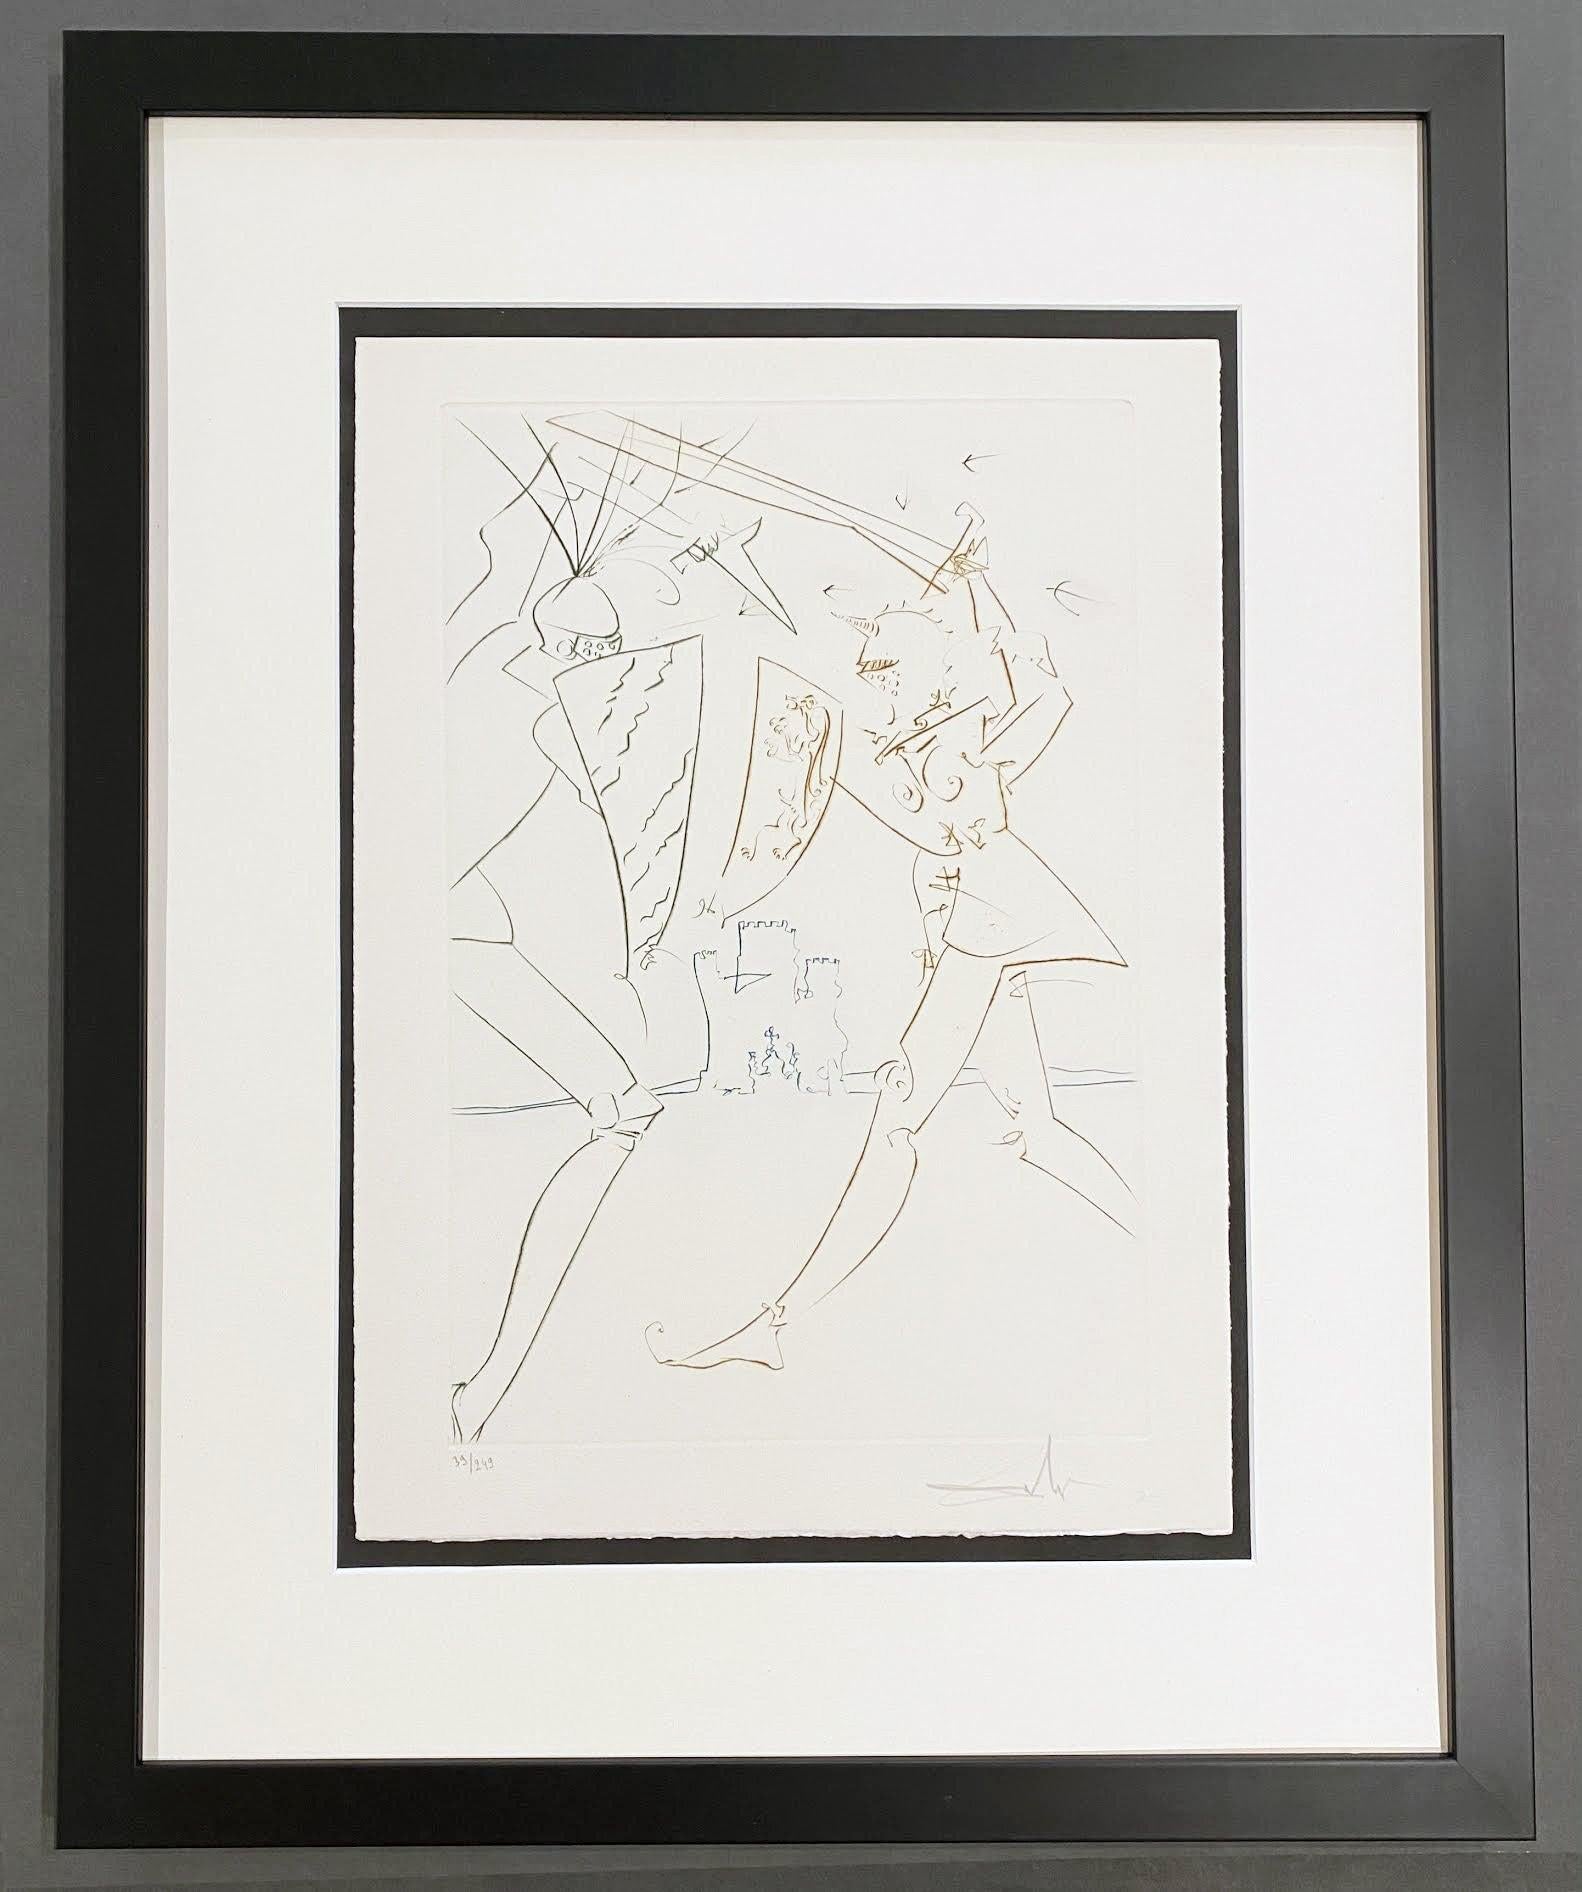 Le passage de Gadalore, de la quête du crépuscule  - Print de Salvador Dalí